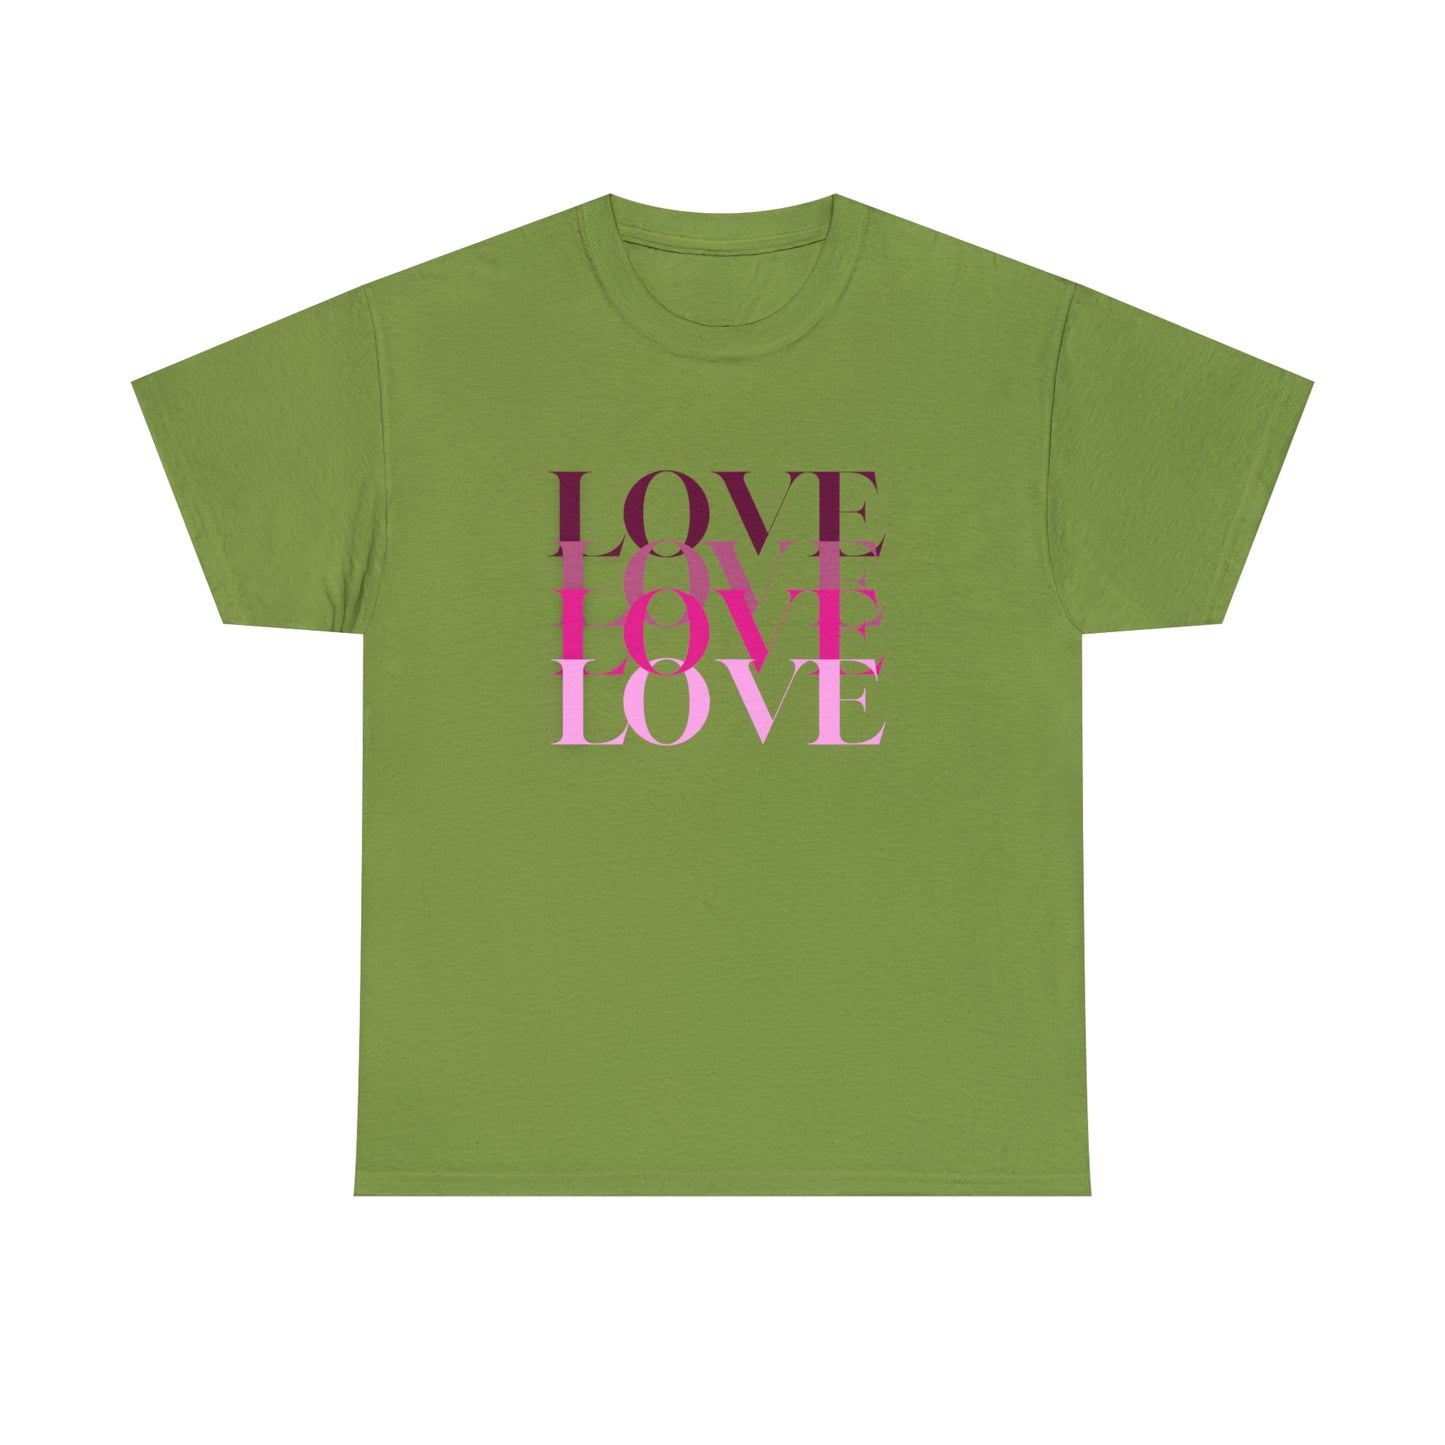 Love Love Love Motivational T- Shirt, Inspirational Shirt